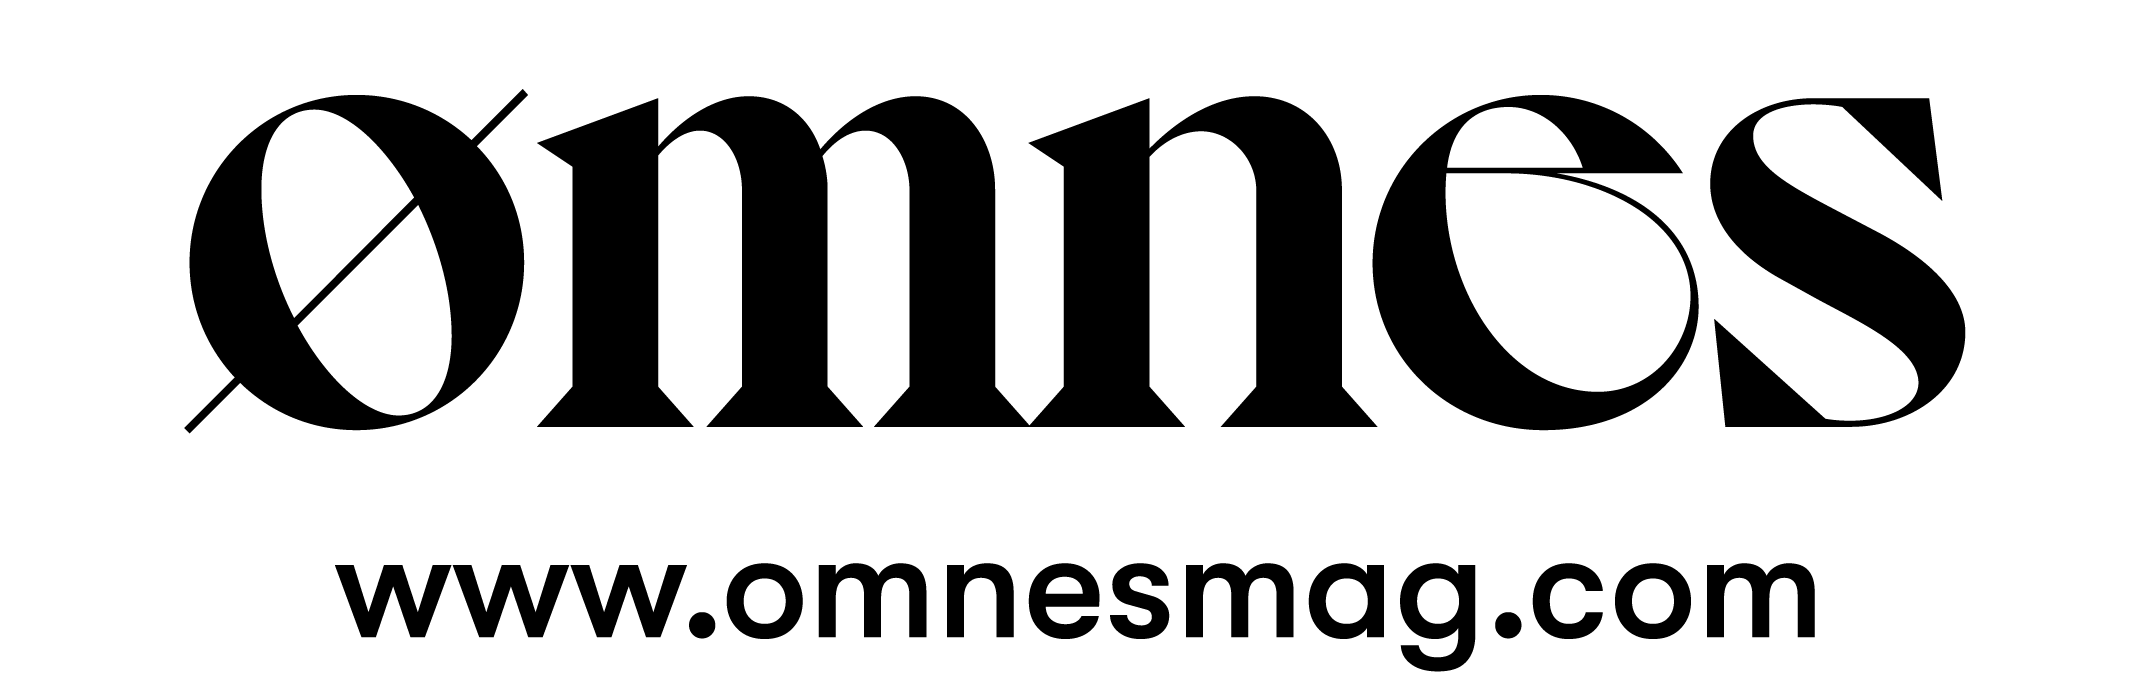 веб-логотип